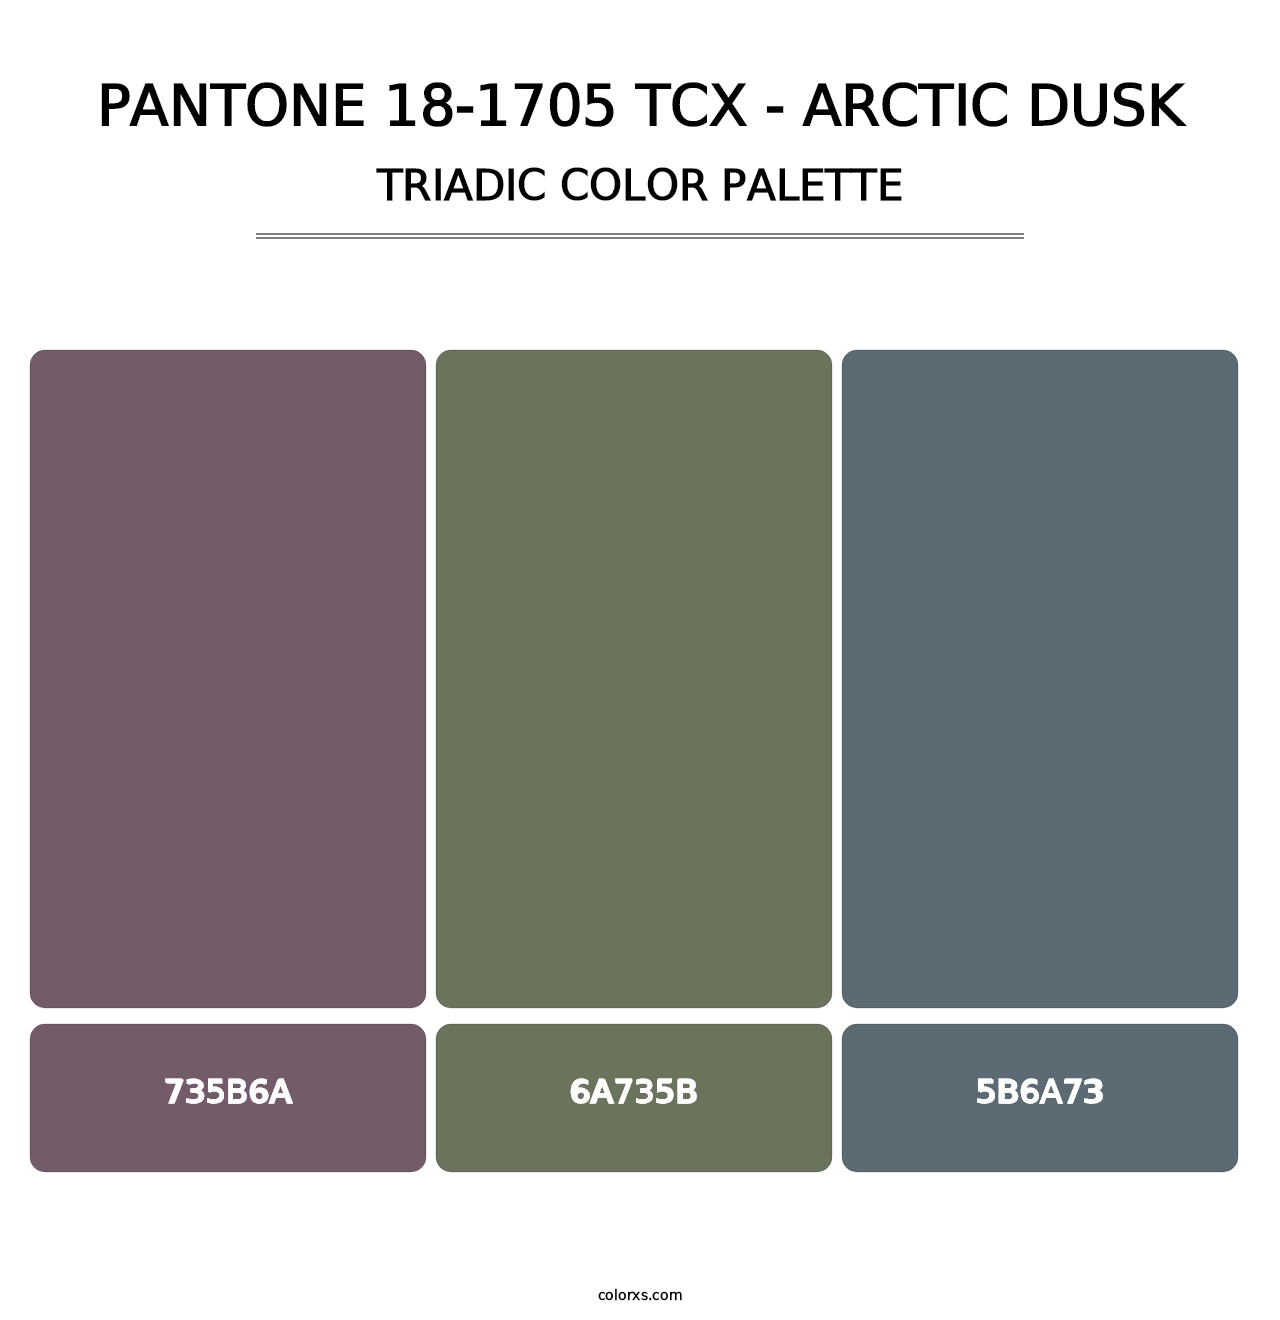 PANTONE 18-1705 TCX - Arctic Dusk - Triadic Color Palette